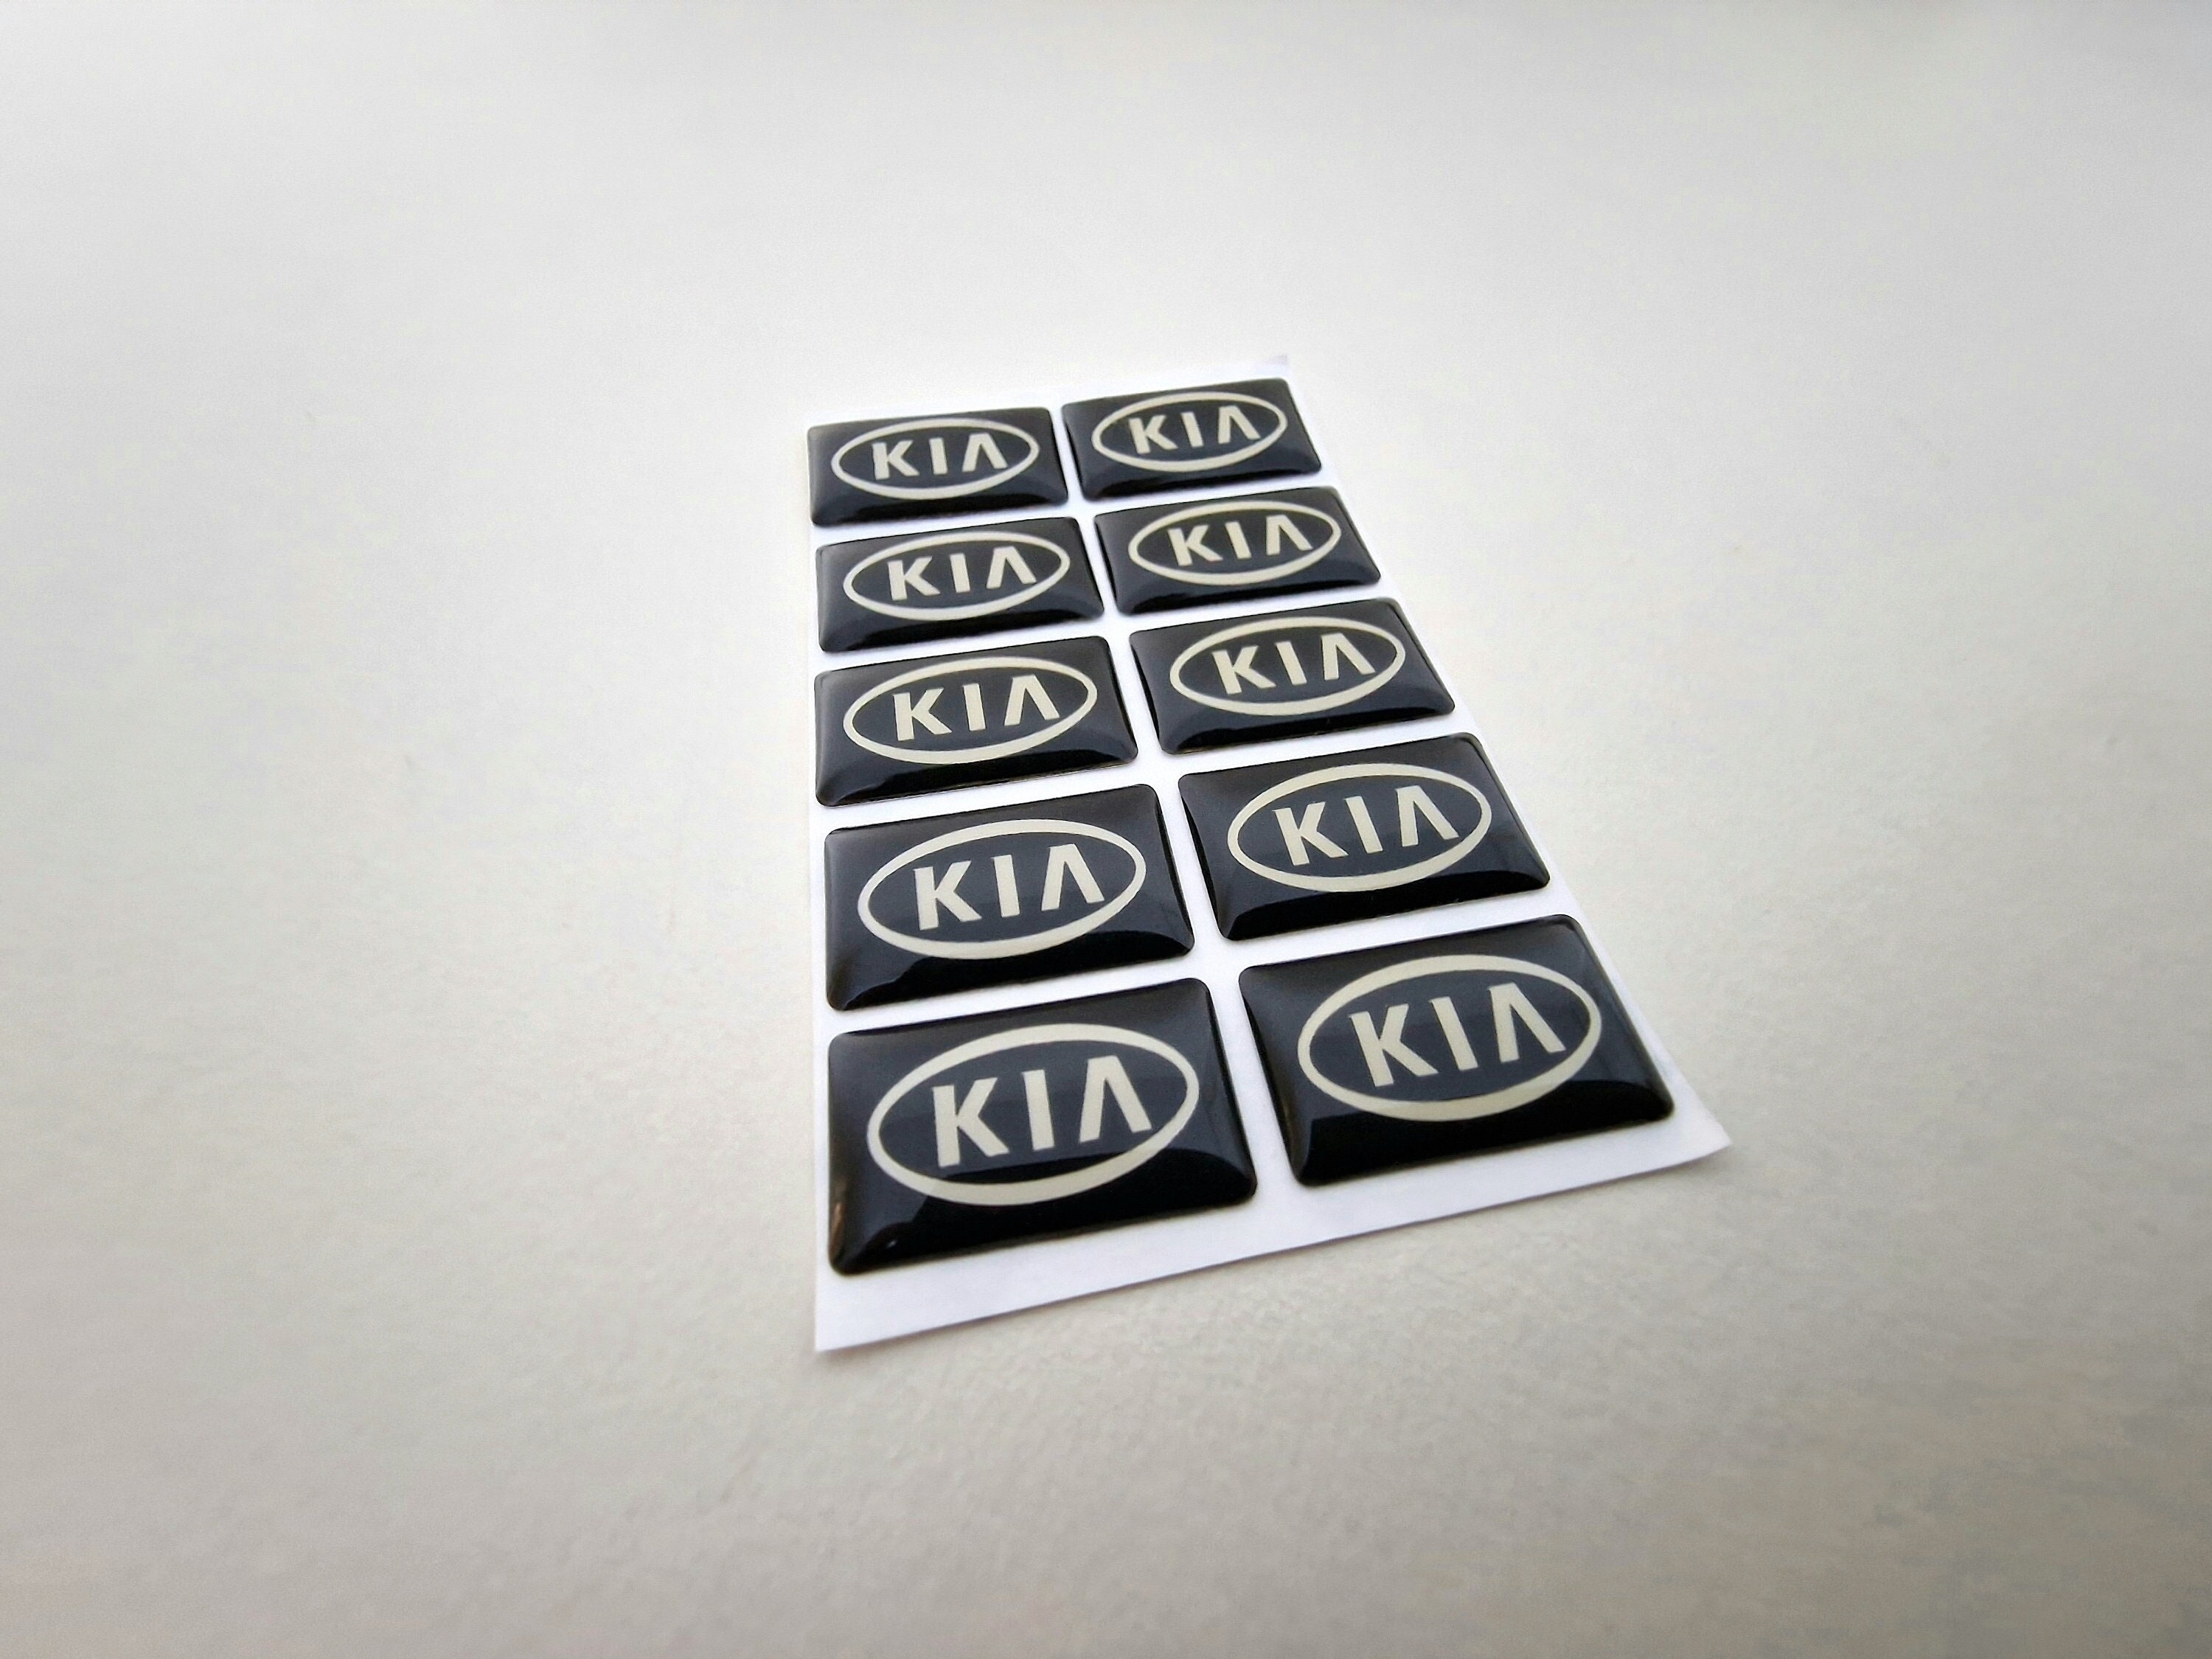 Kia Emblem Sticker -  Finland